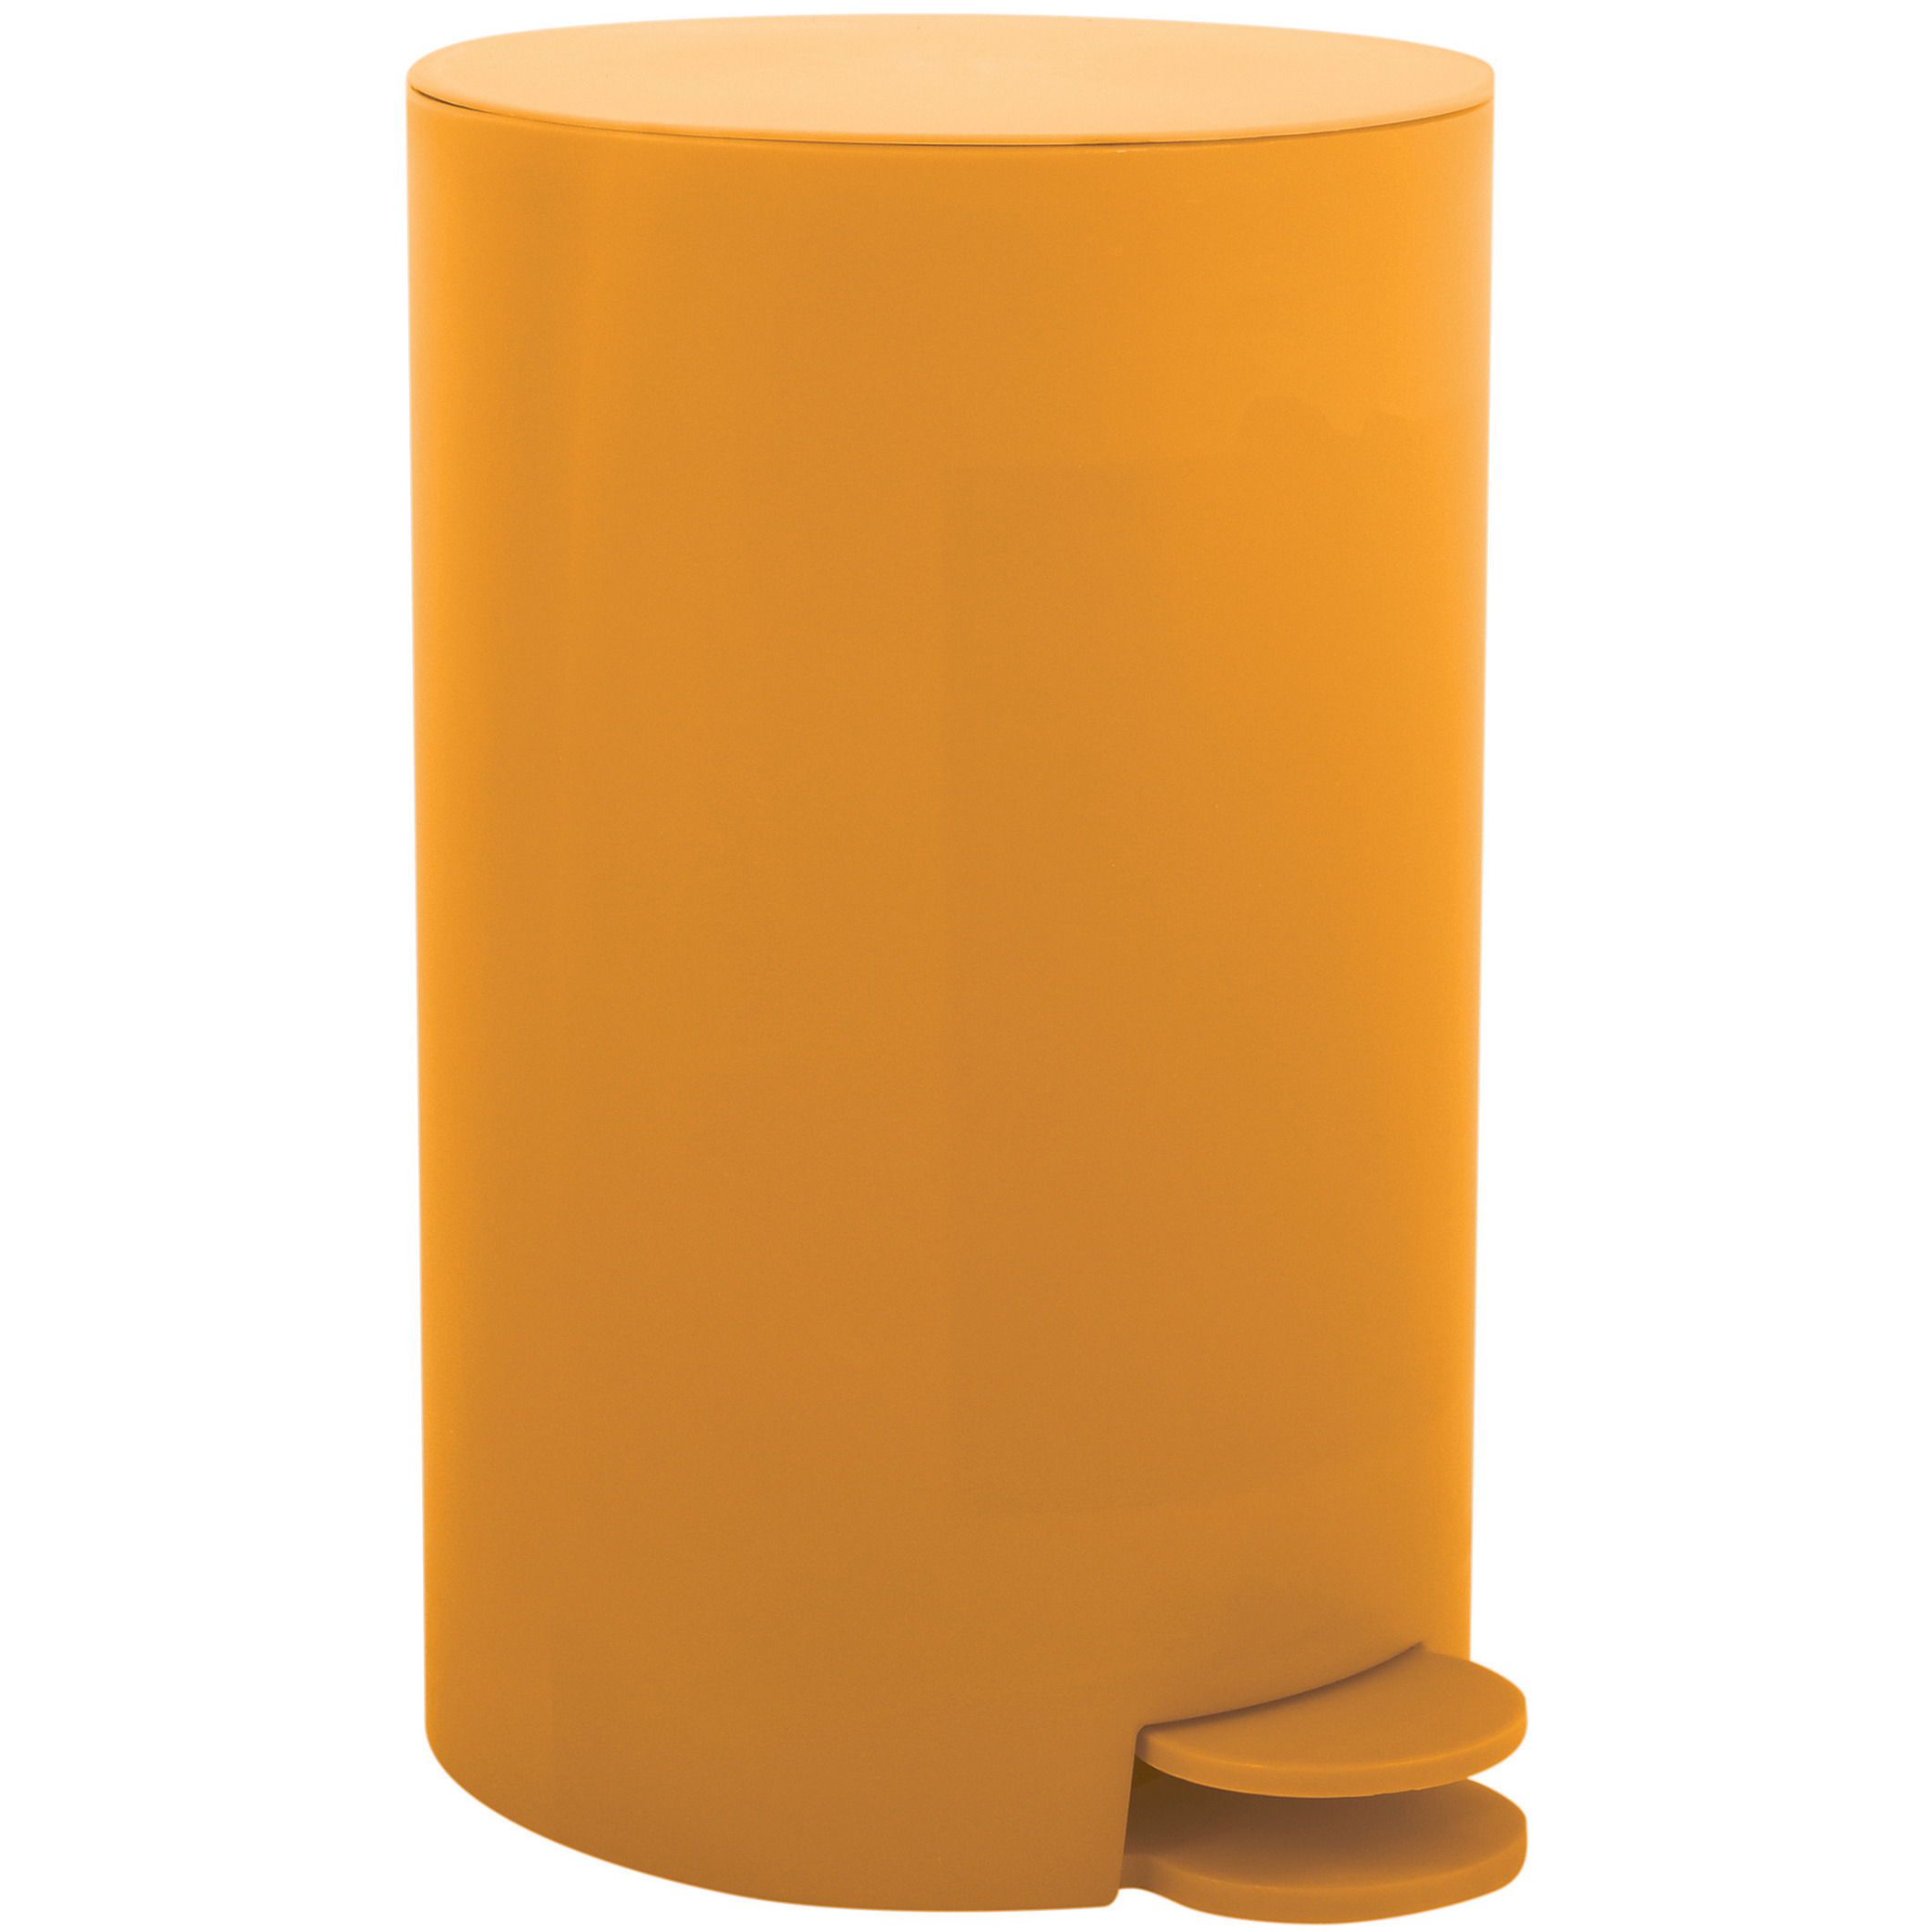 Prullenbak-pedaalemmer kunststof saffraan geel 3 liter 15 x 27 cm Badkamer-toilet